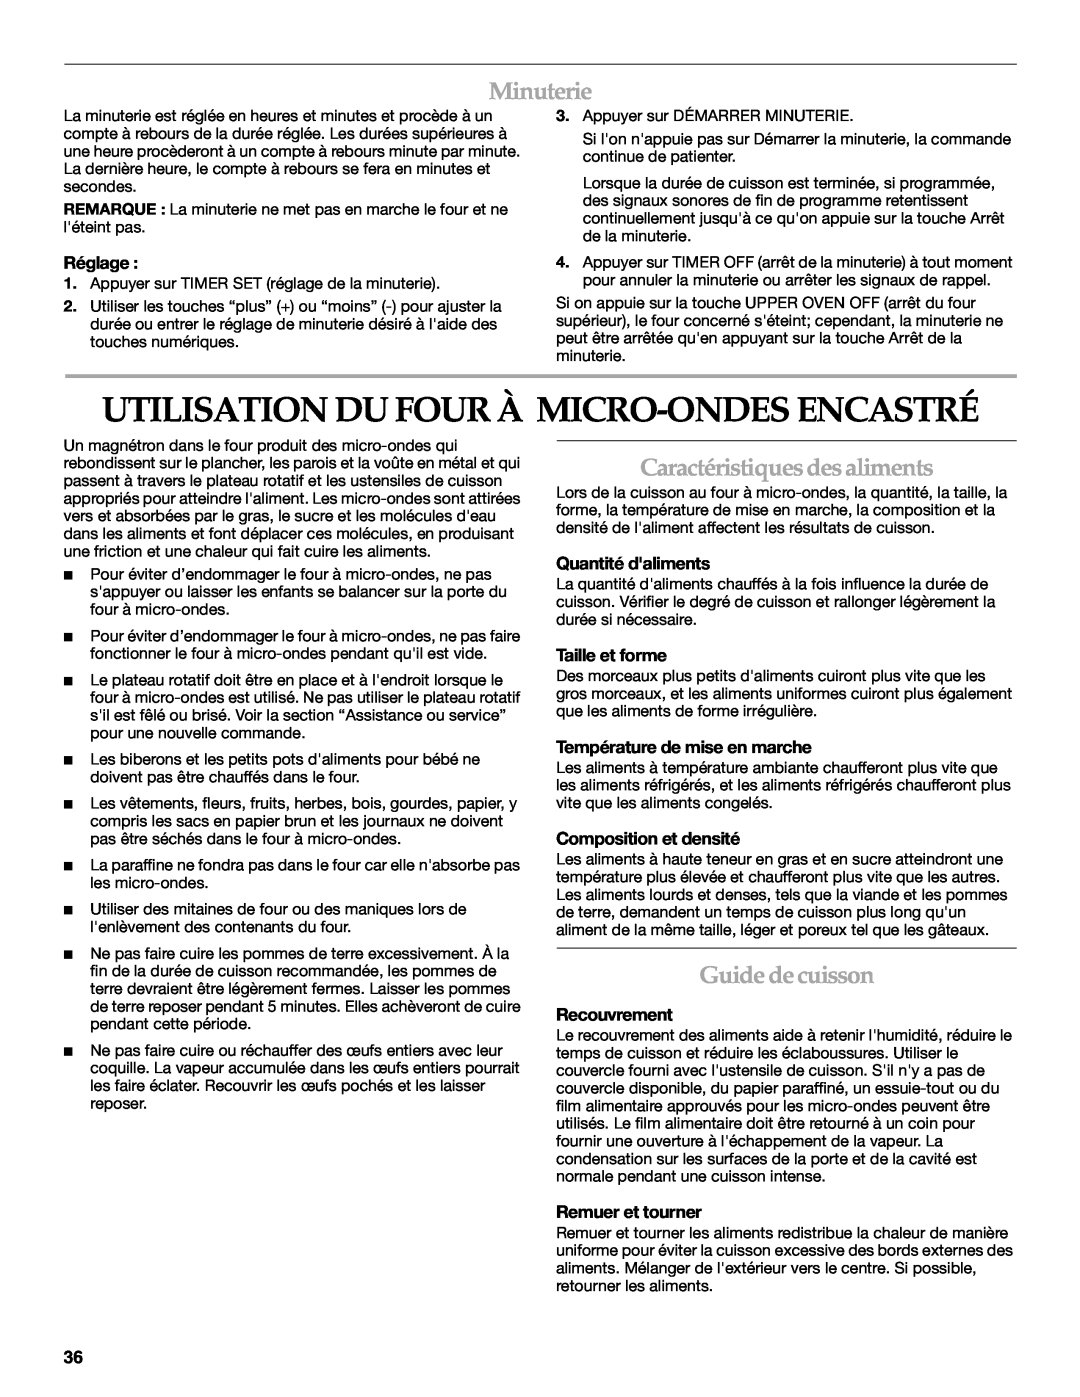 KitchenAid KEHU309 Utilisation Du Four À Micro-Ondes Encastré, Minuterie, Caractéristiques desaliments, Guide decuisson 